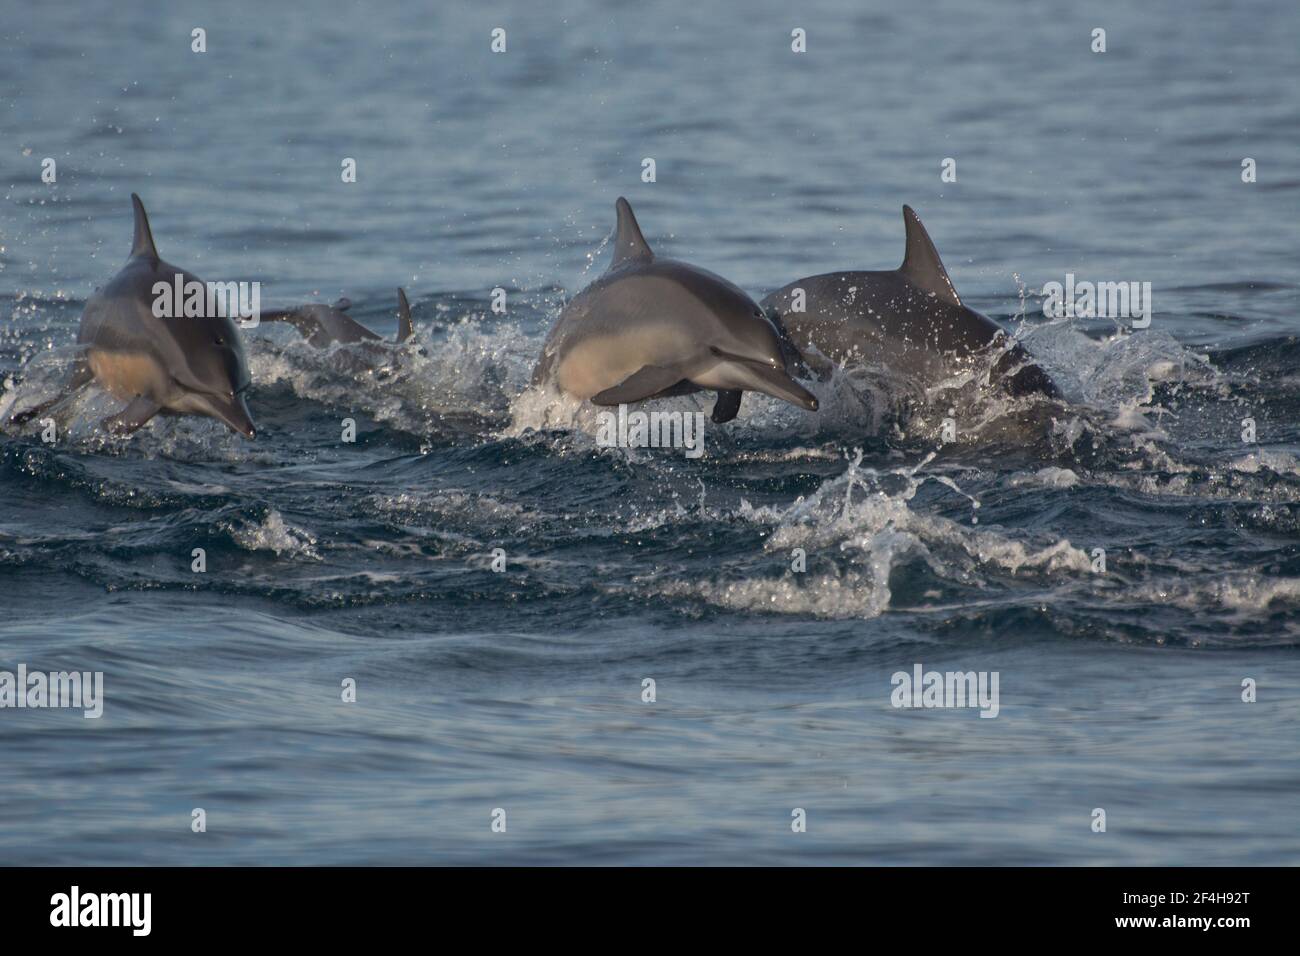 Delfine beobachten, die grosse Attraktion am Strand von Pantai Lovina im Norden Balis Stock Photo